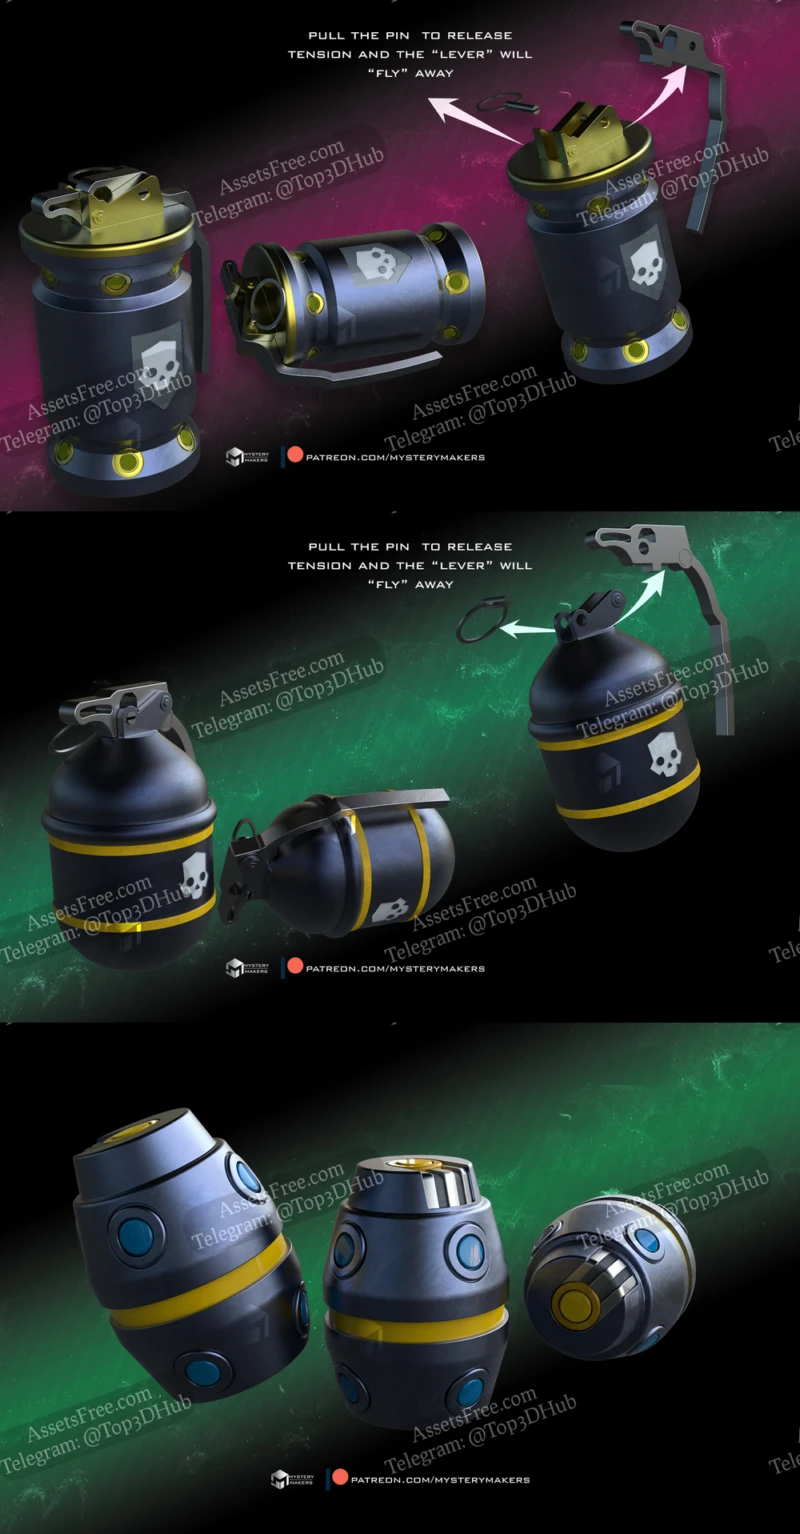 G3 smoke grenade and G6 Frag grenade and G6 Impact